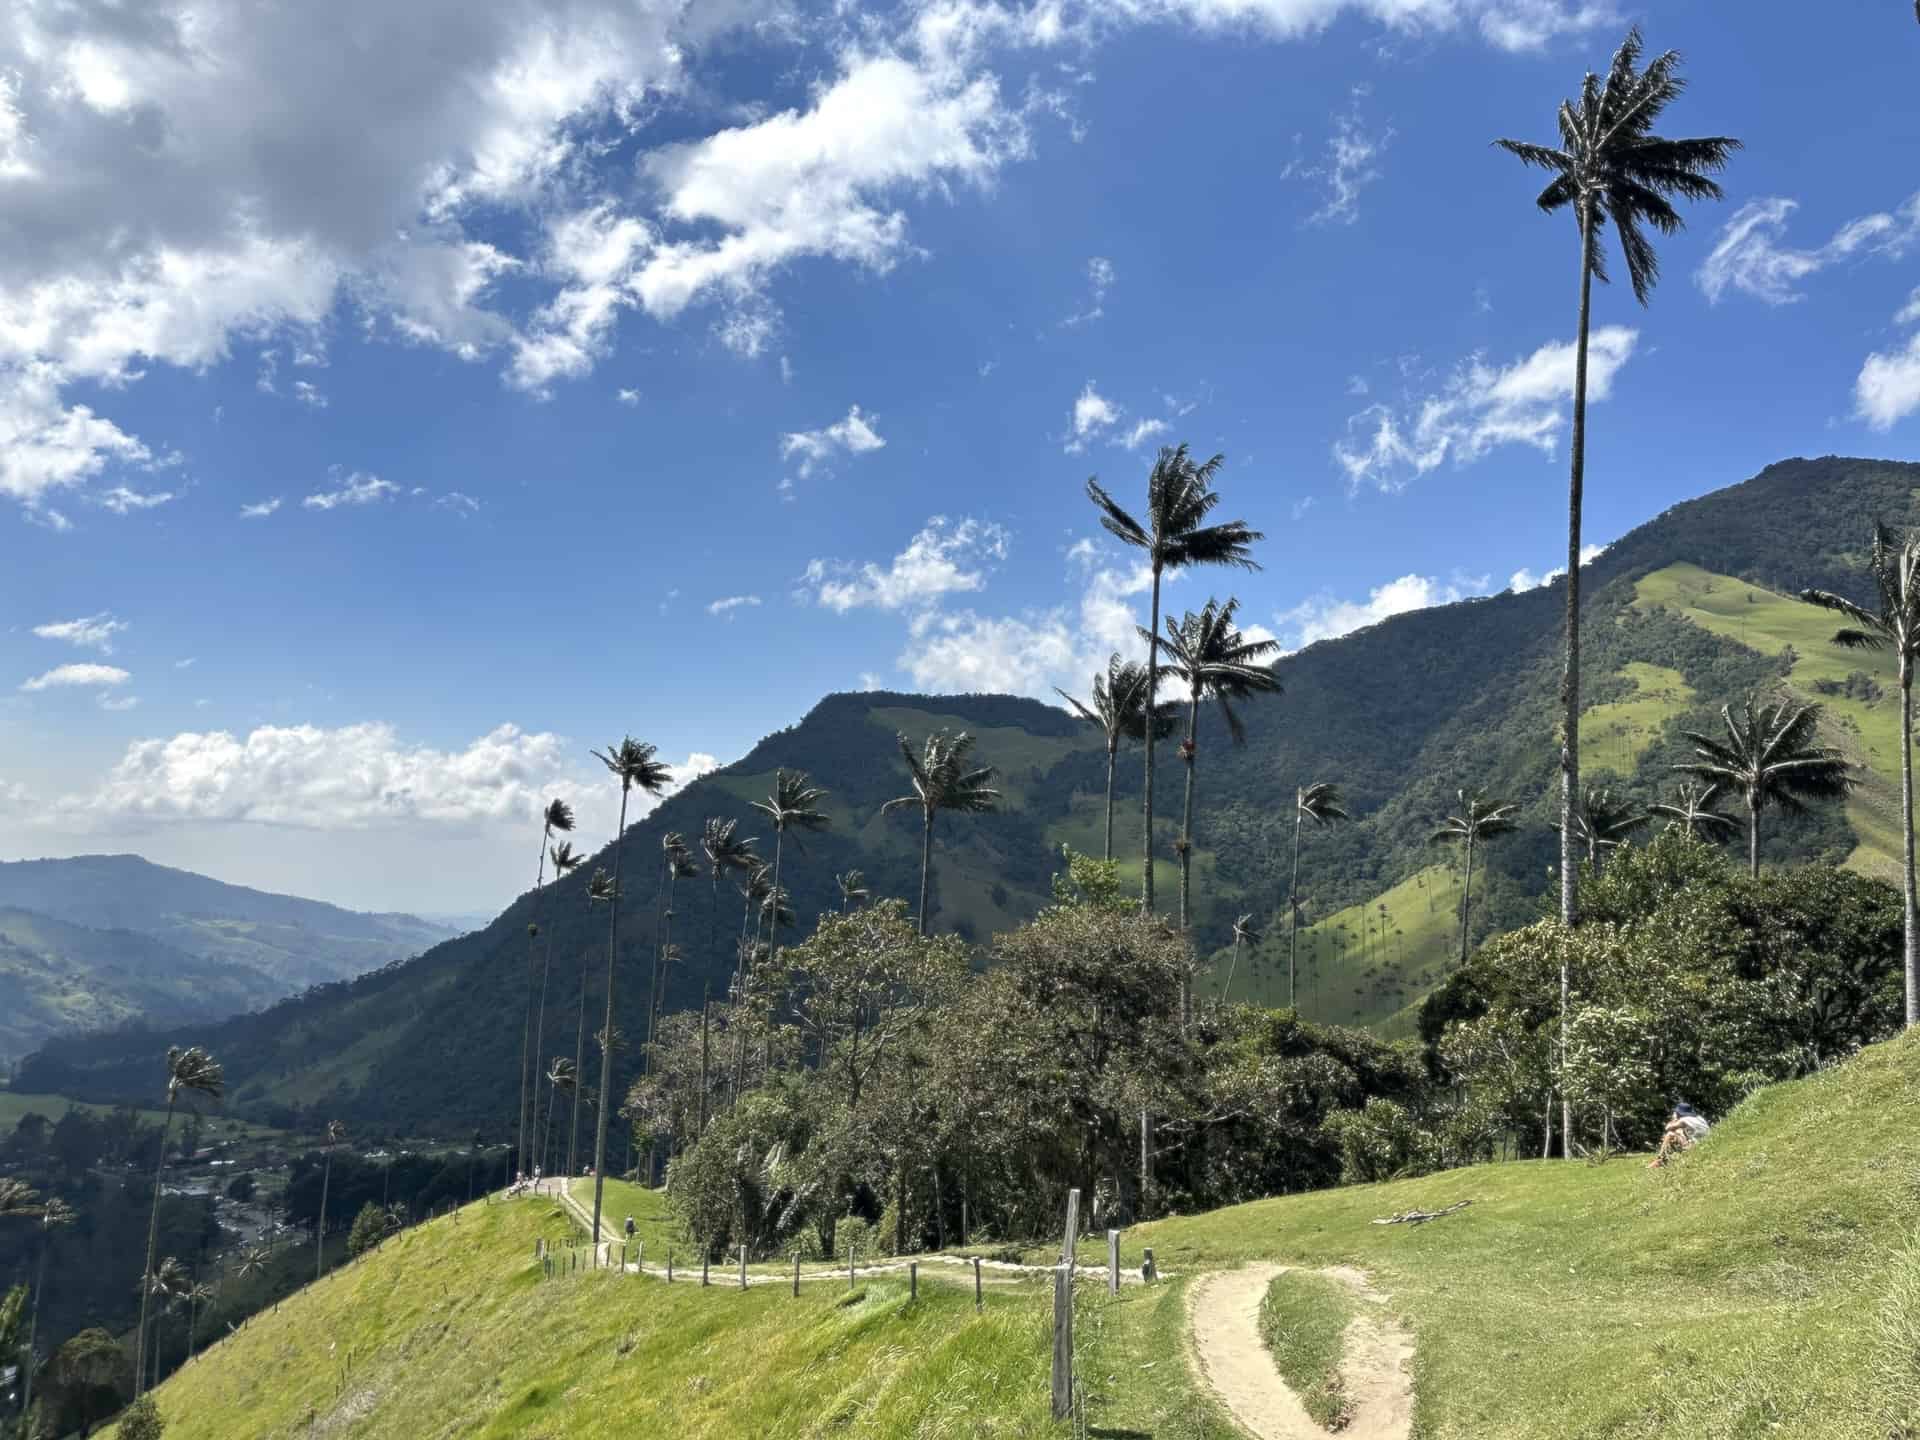 Mirador #1 at Cocora Valley in Quindío, Colombia